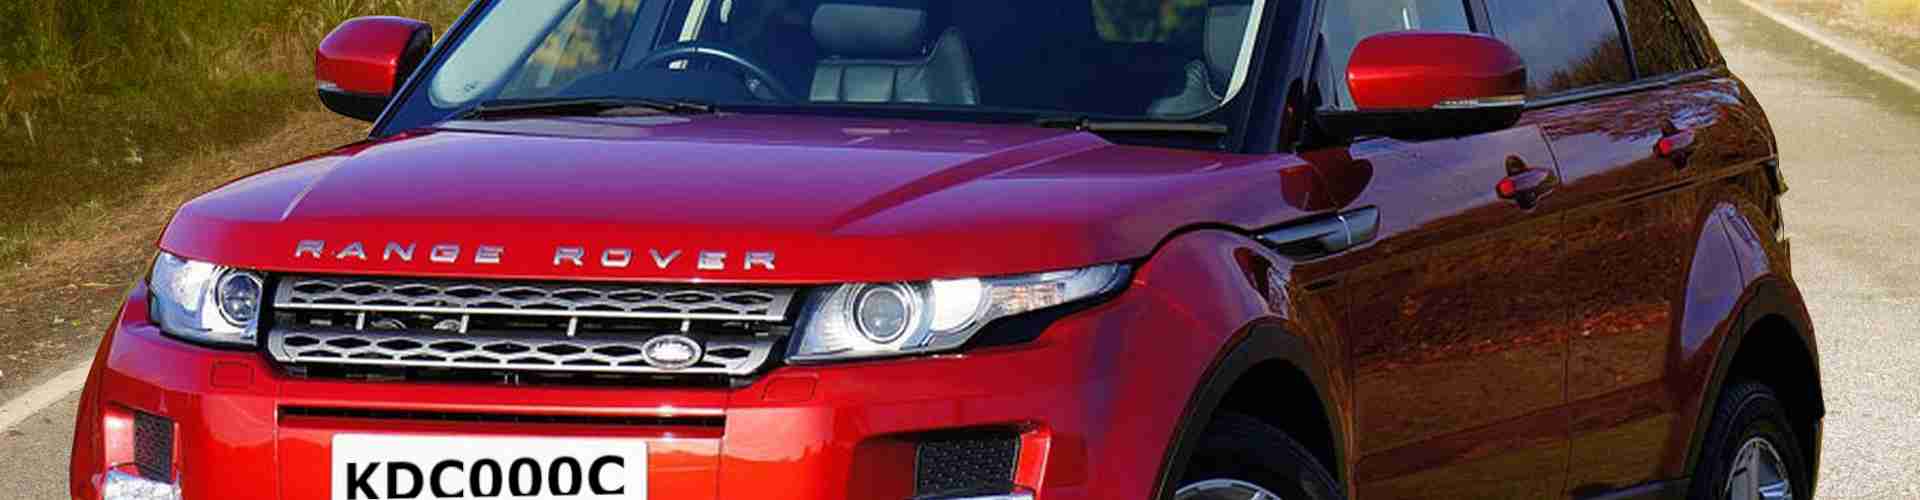 Cars for Sale in Kenya | Magari Deals